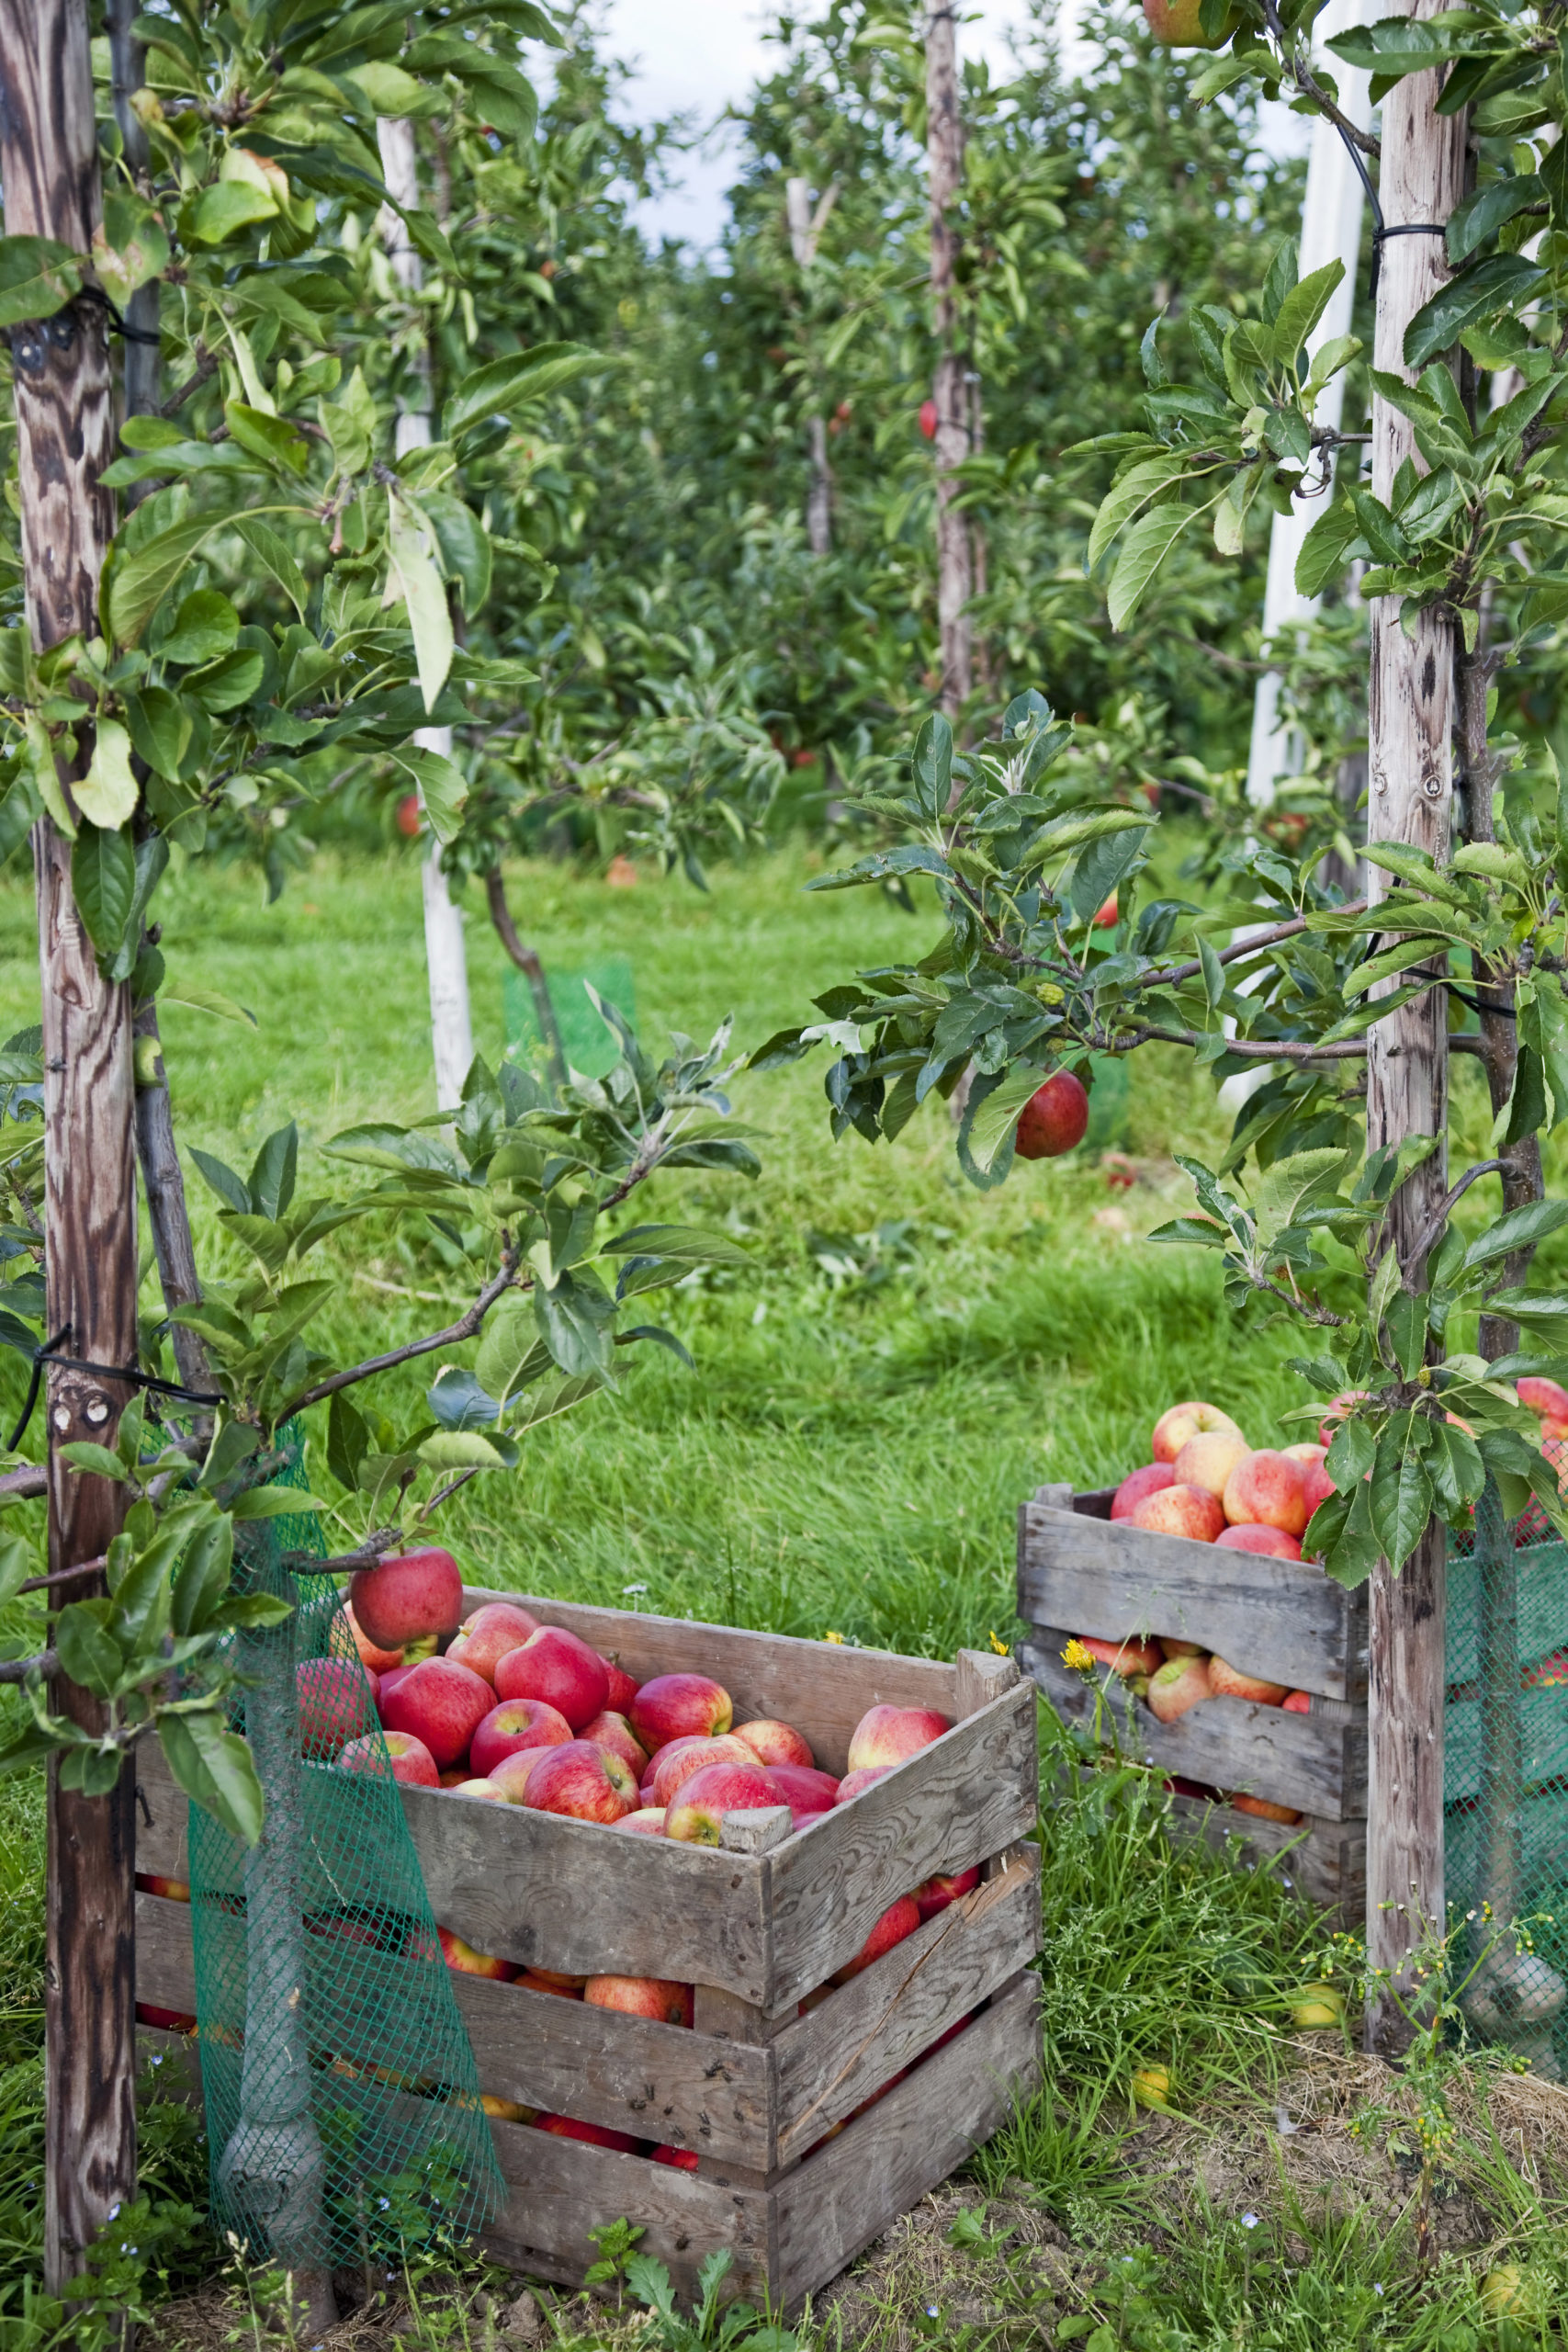 Dol op appels en peren? Helemaal als ze vers van de boom komen? Bij verschillende boomgaarden in het hele land kun je op dit moment zelf appels en peren plukken.